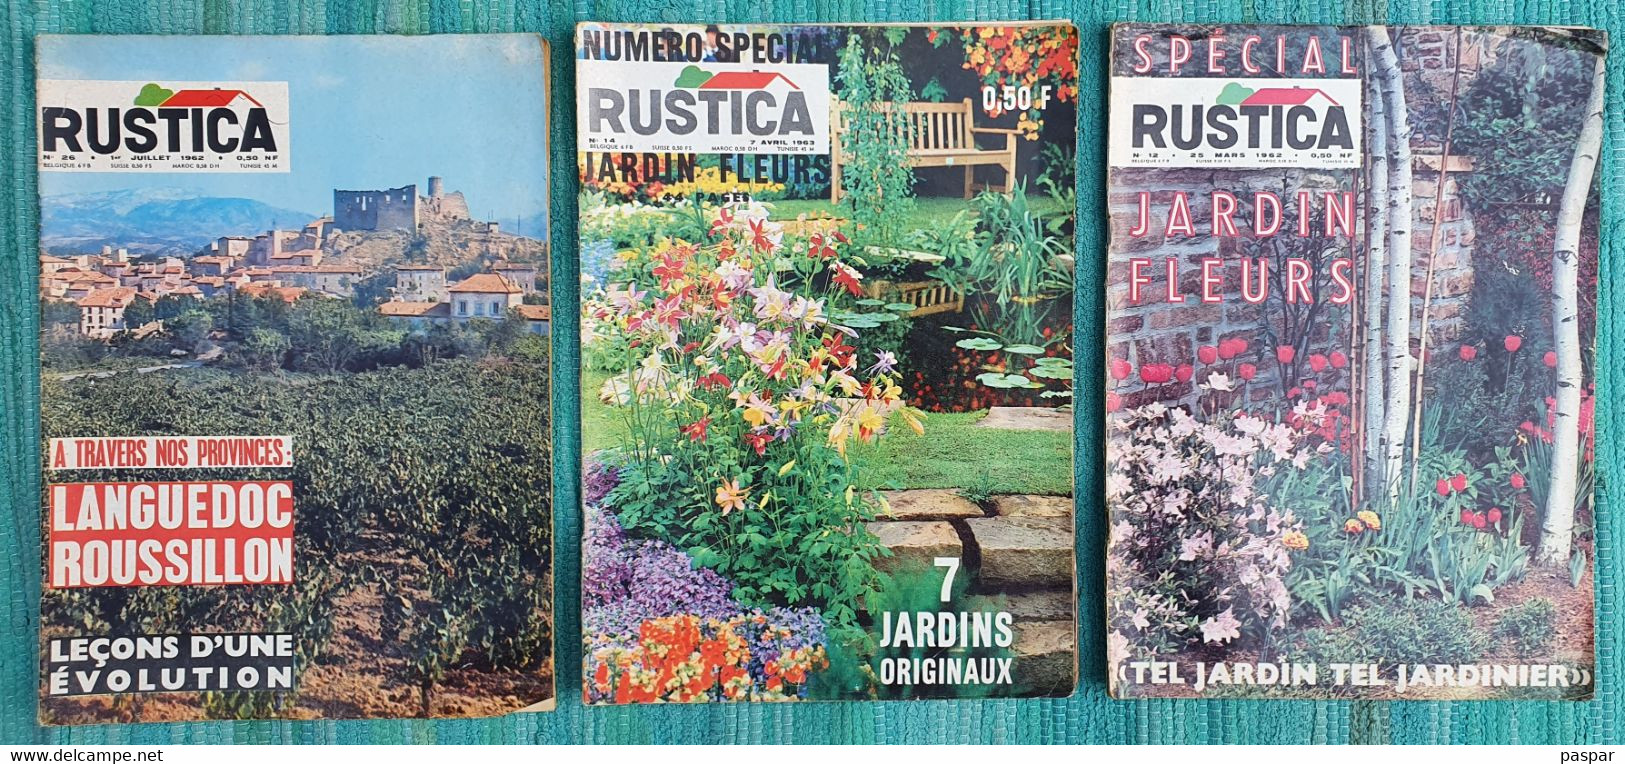 RUSTICA Lot De 3 Revues 1962 N° 12 (special Jardin Fleurs) Et 26, 1963 N°14 (spécial Jardin Fleurs) - Garden